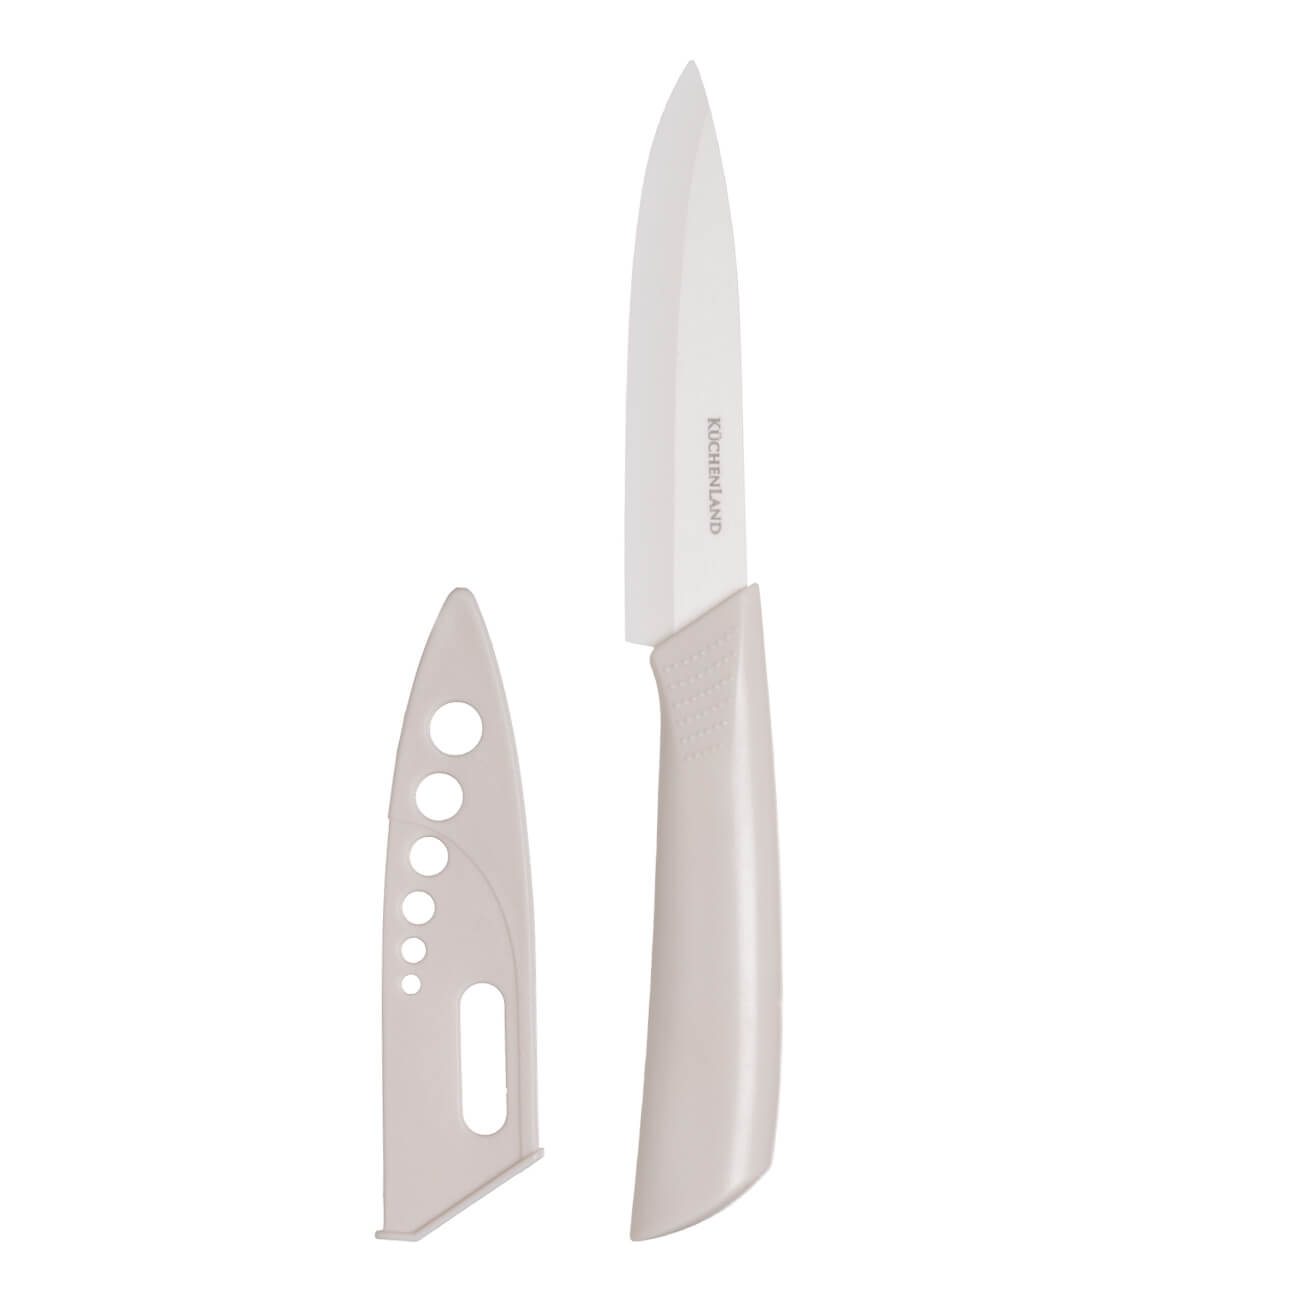 Нож для нарезки, 15 см, с чехлом, керамика/пластик, молочный, Regular изображение № 1